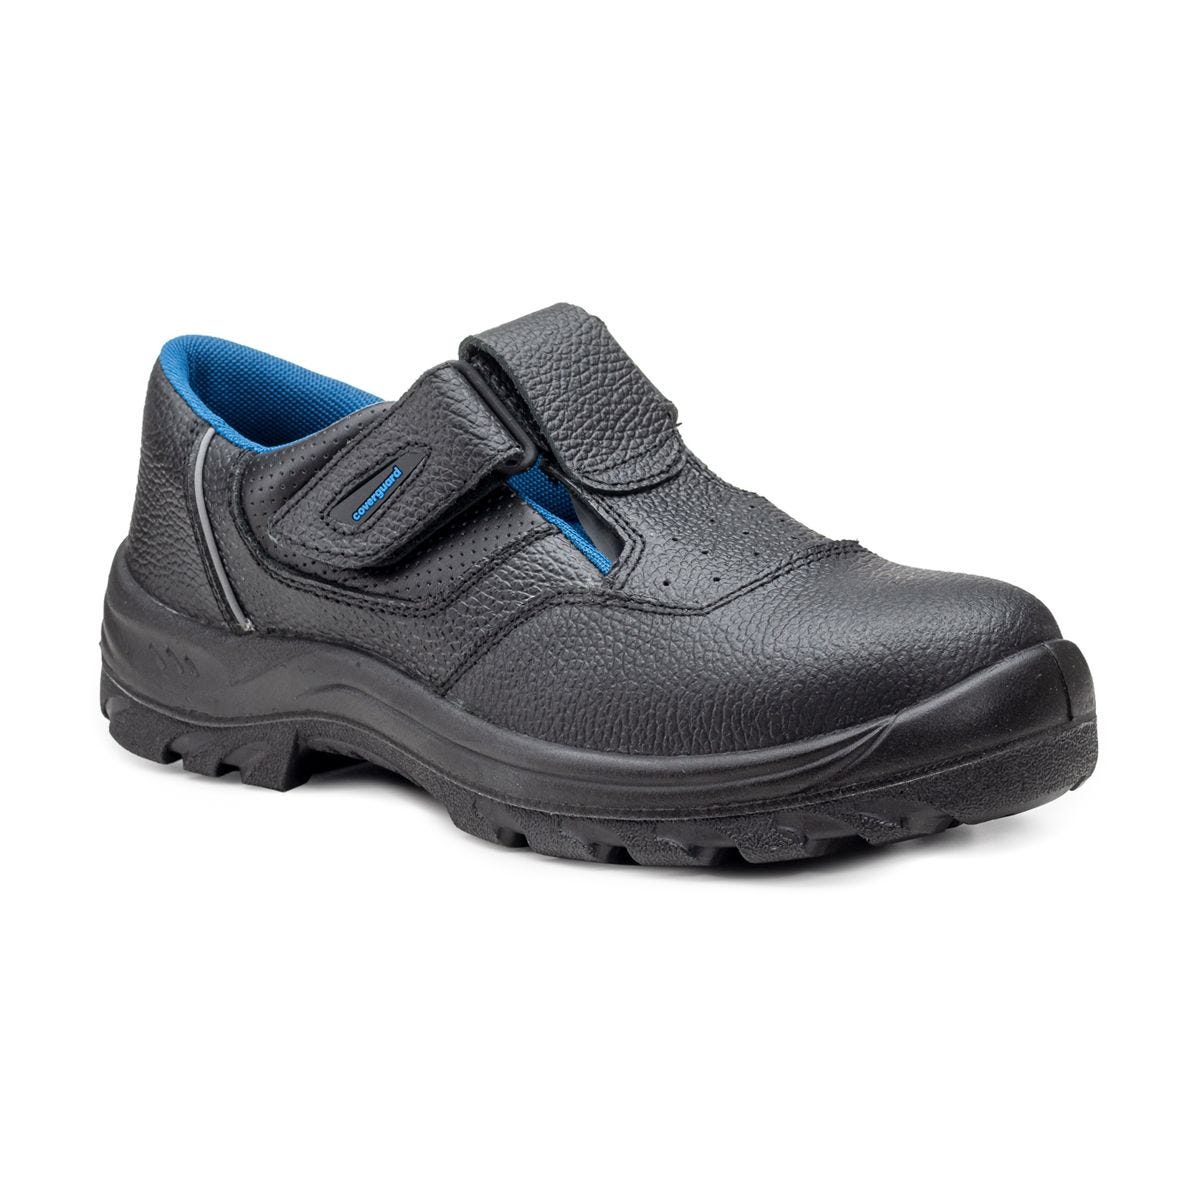 Sandales de sécurité basses Bosco II noir - Coverguard - Taille 36 0